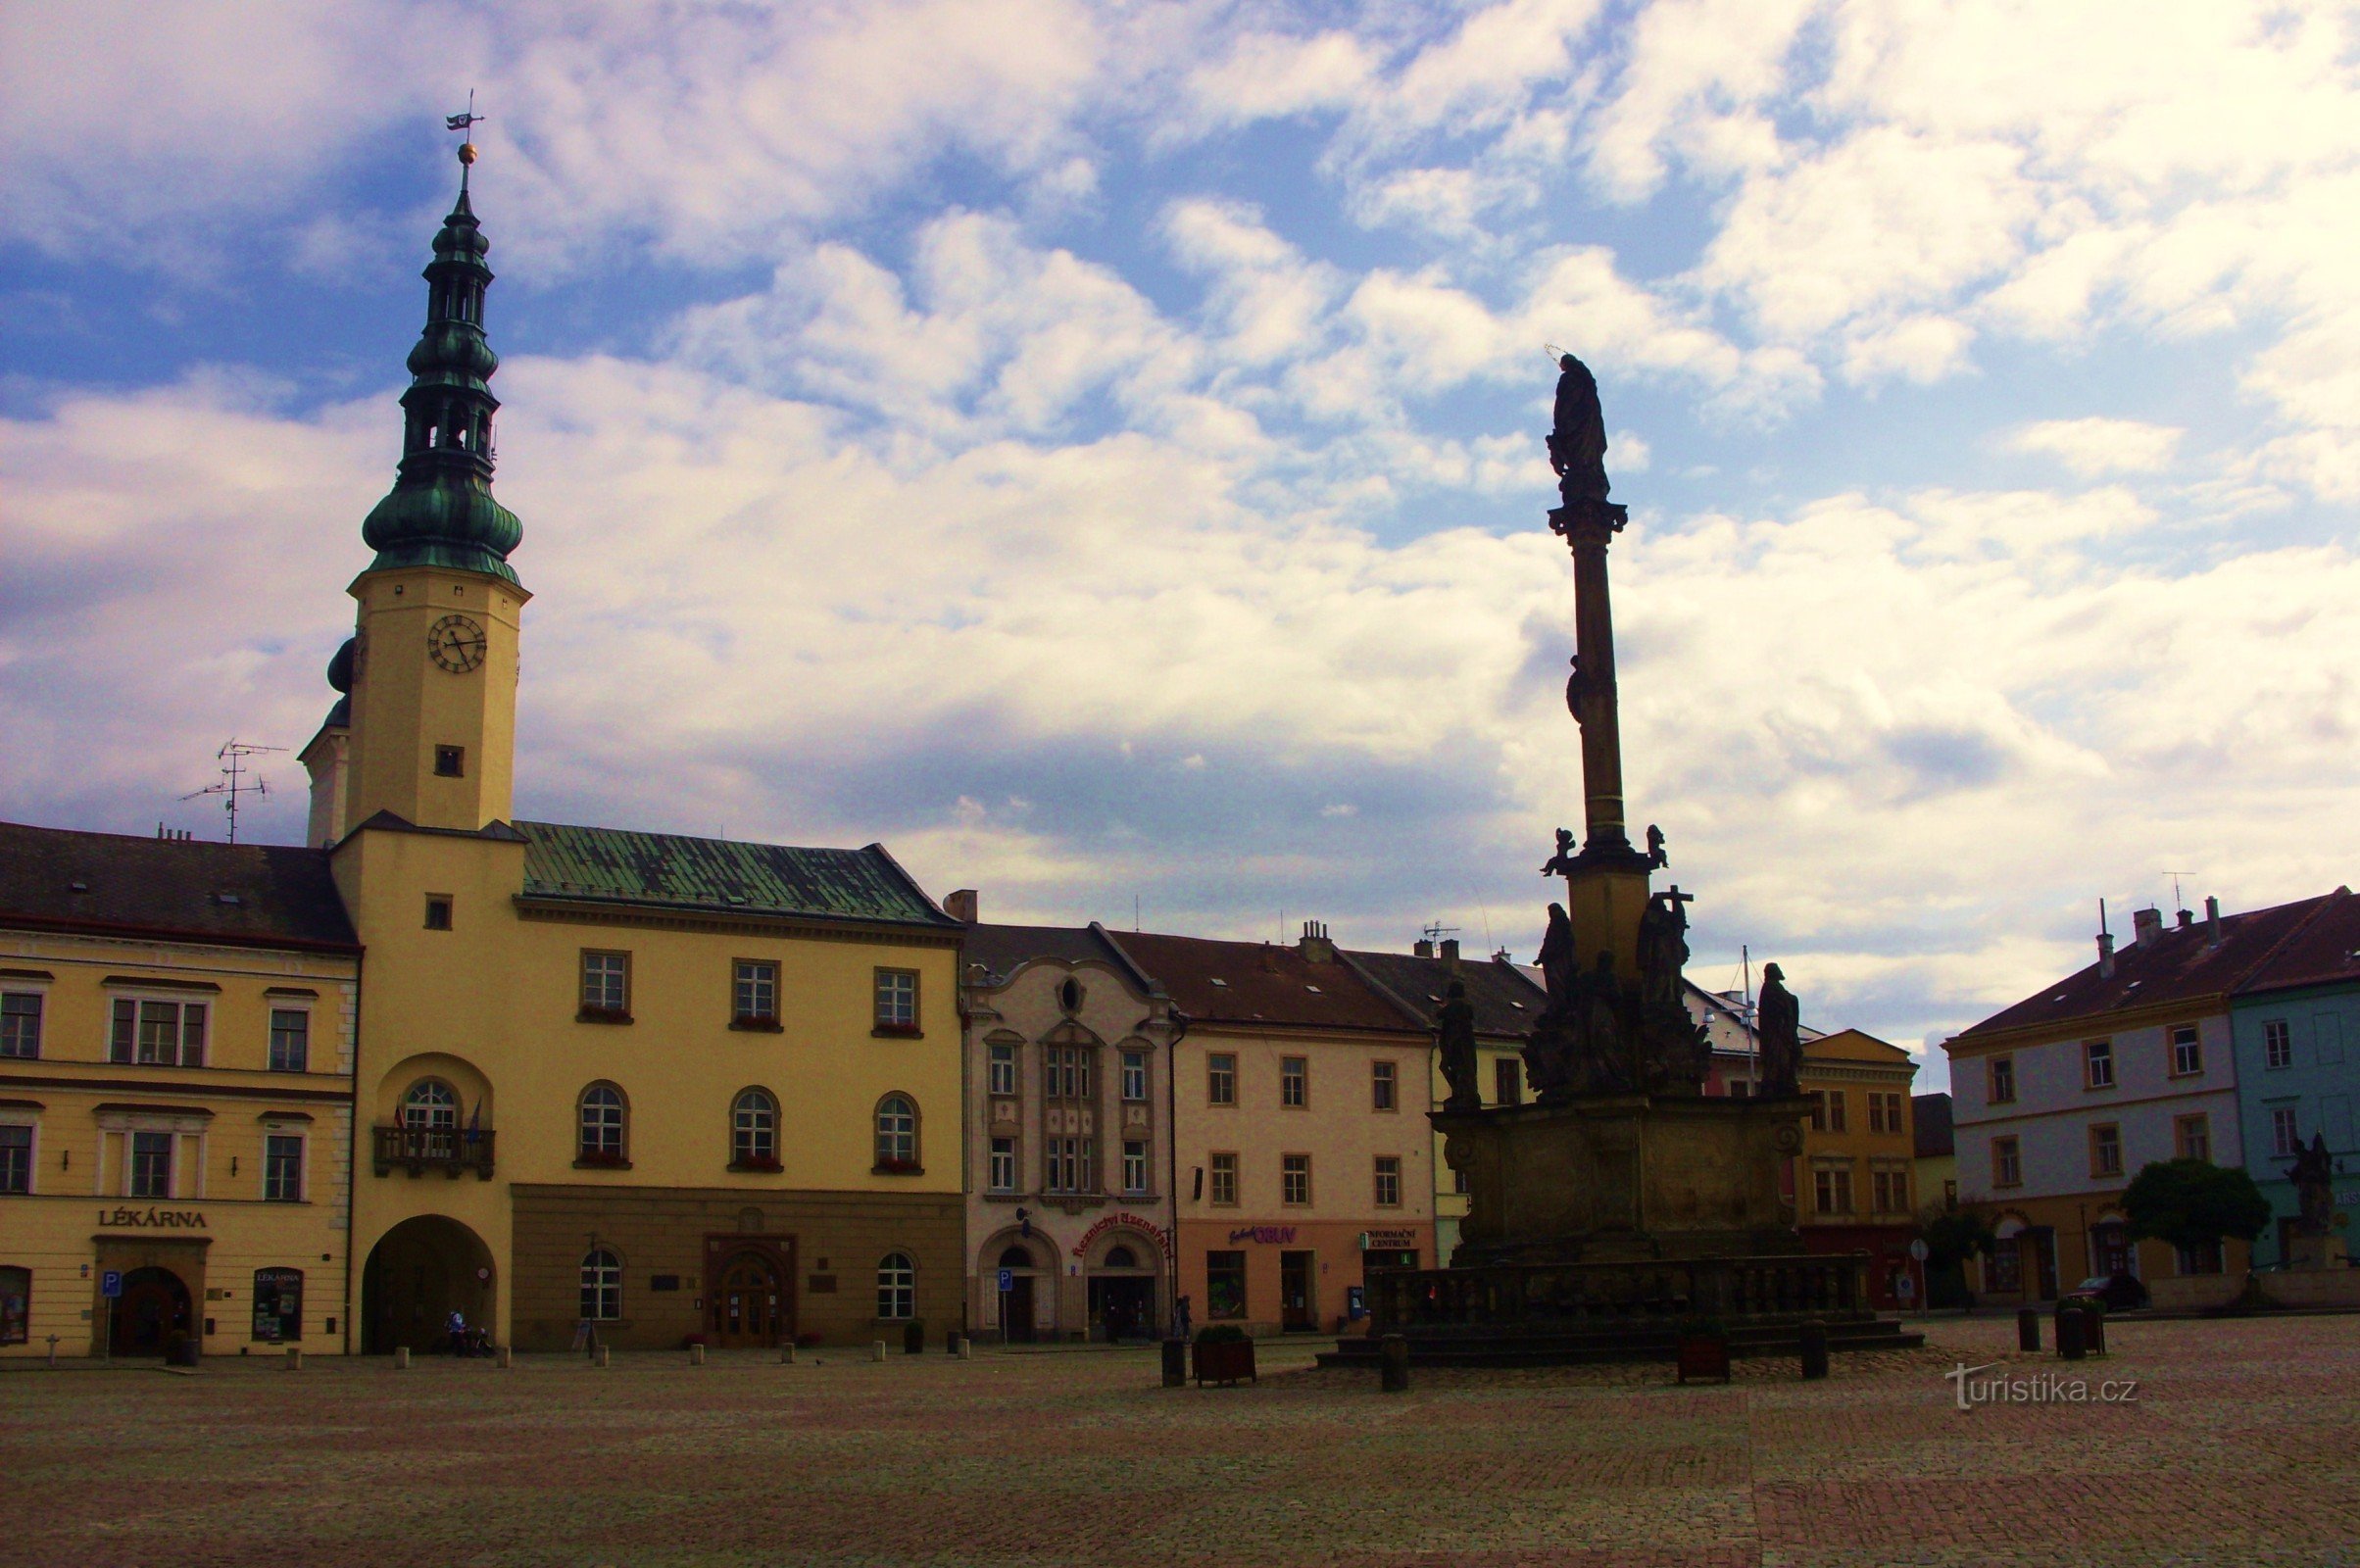 For monuments to Moravská Třebová